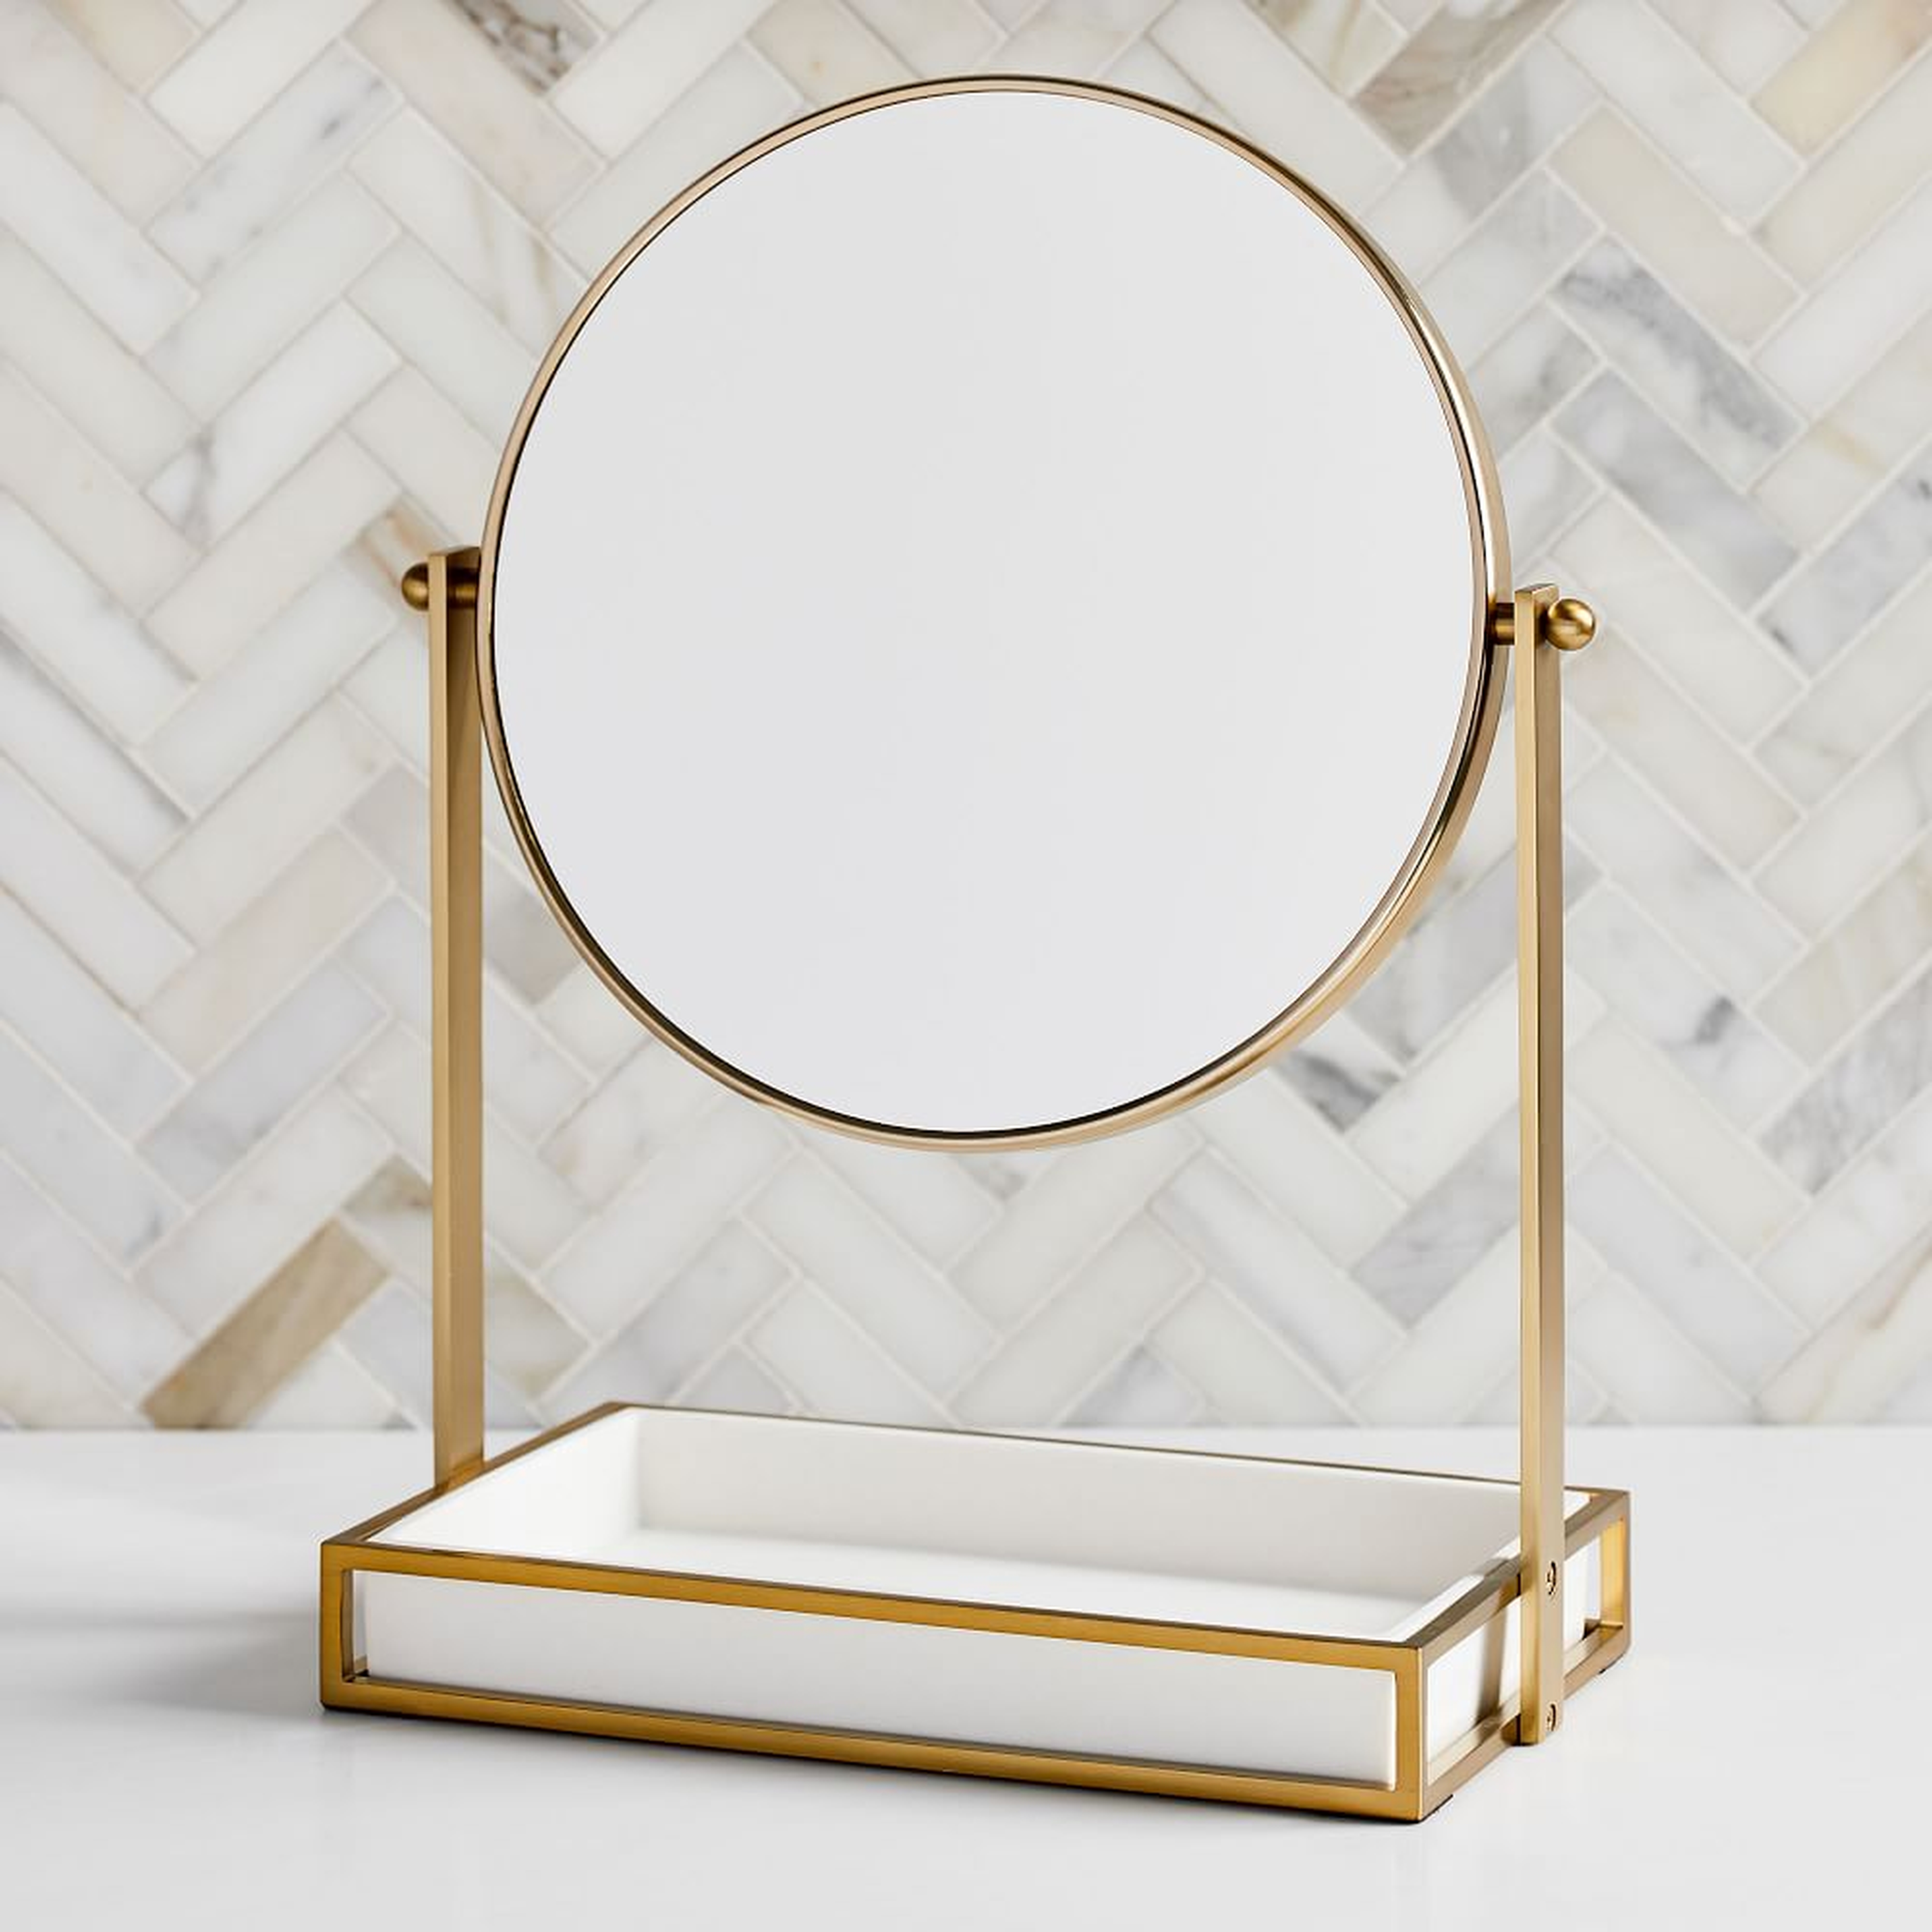 Modern Resin Stone Vanity Mirror, White & Antique Brass - West Elm